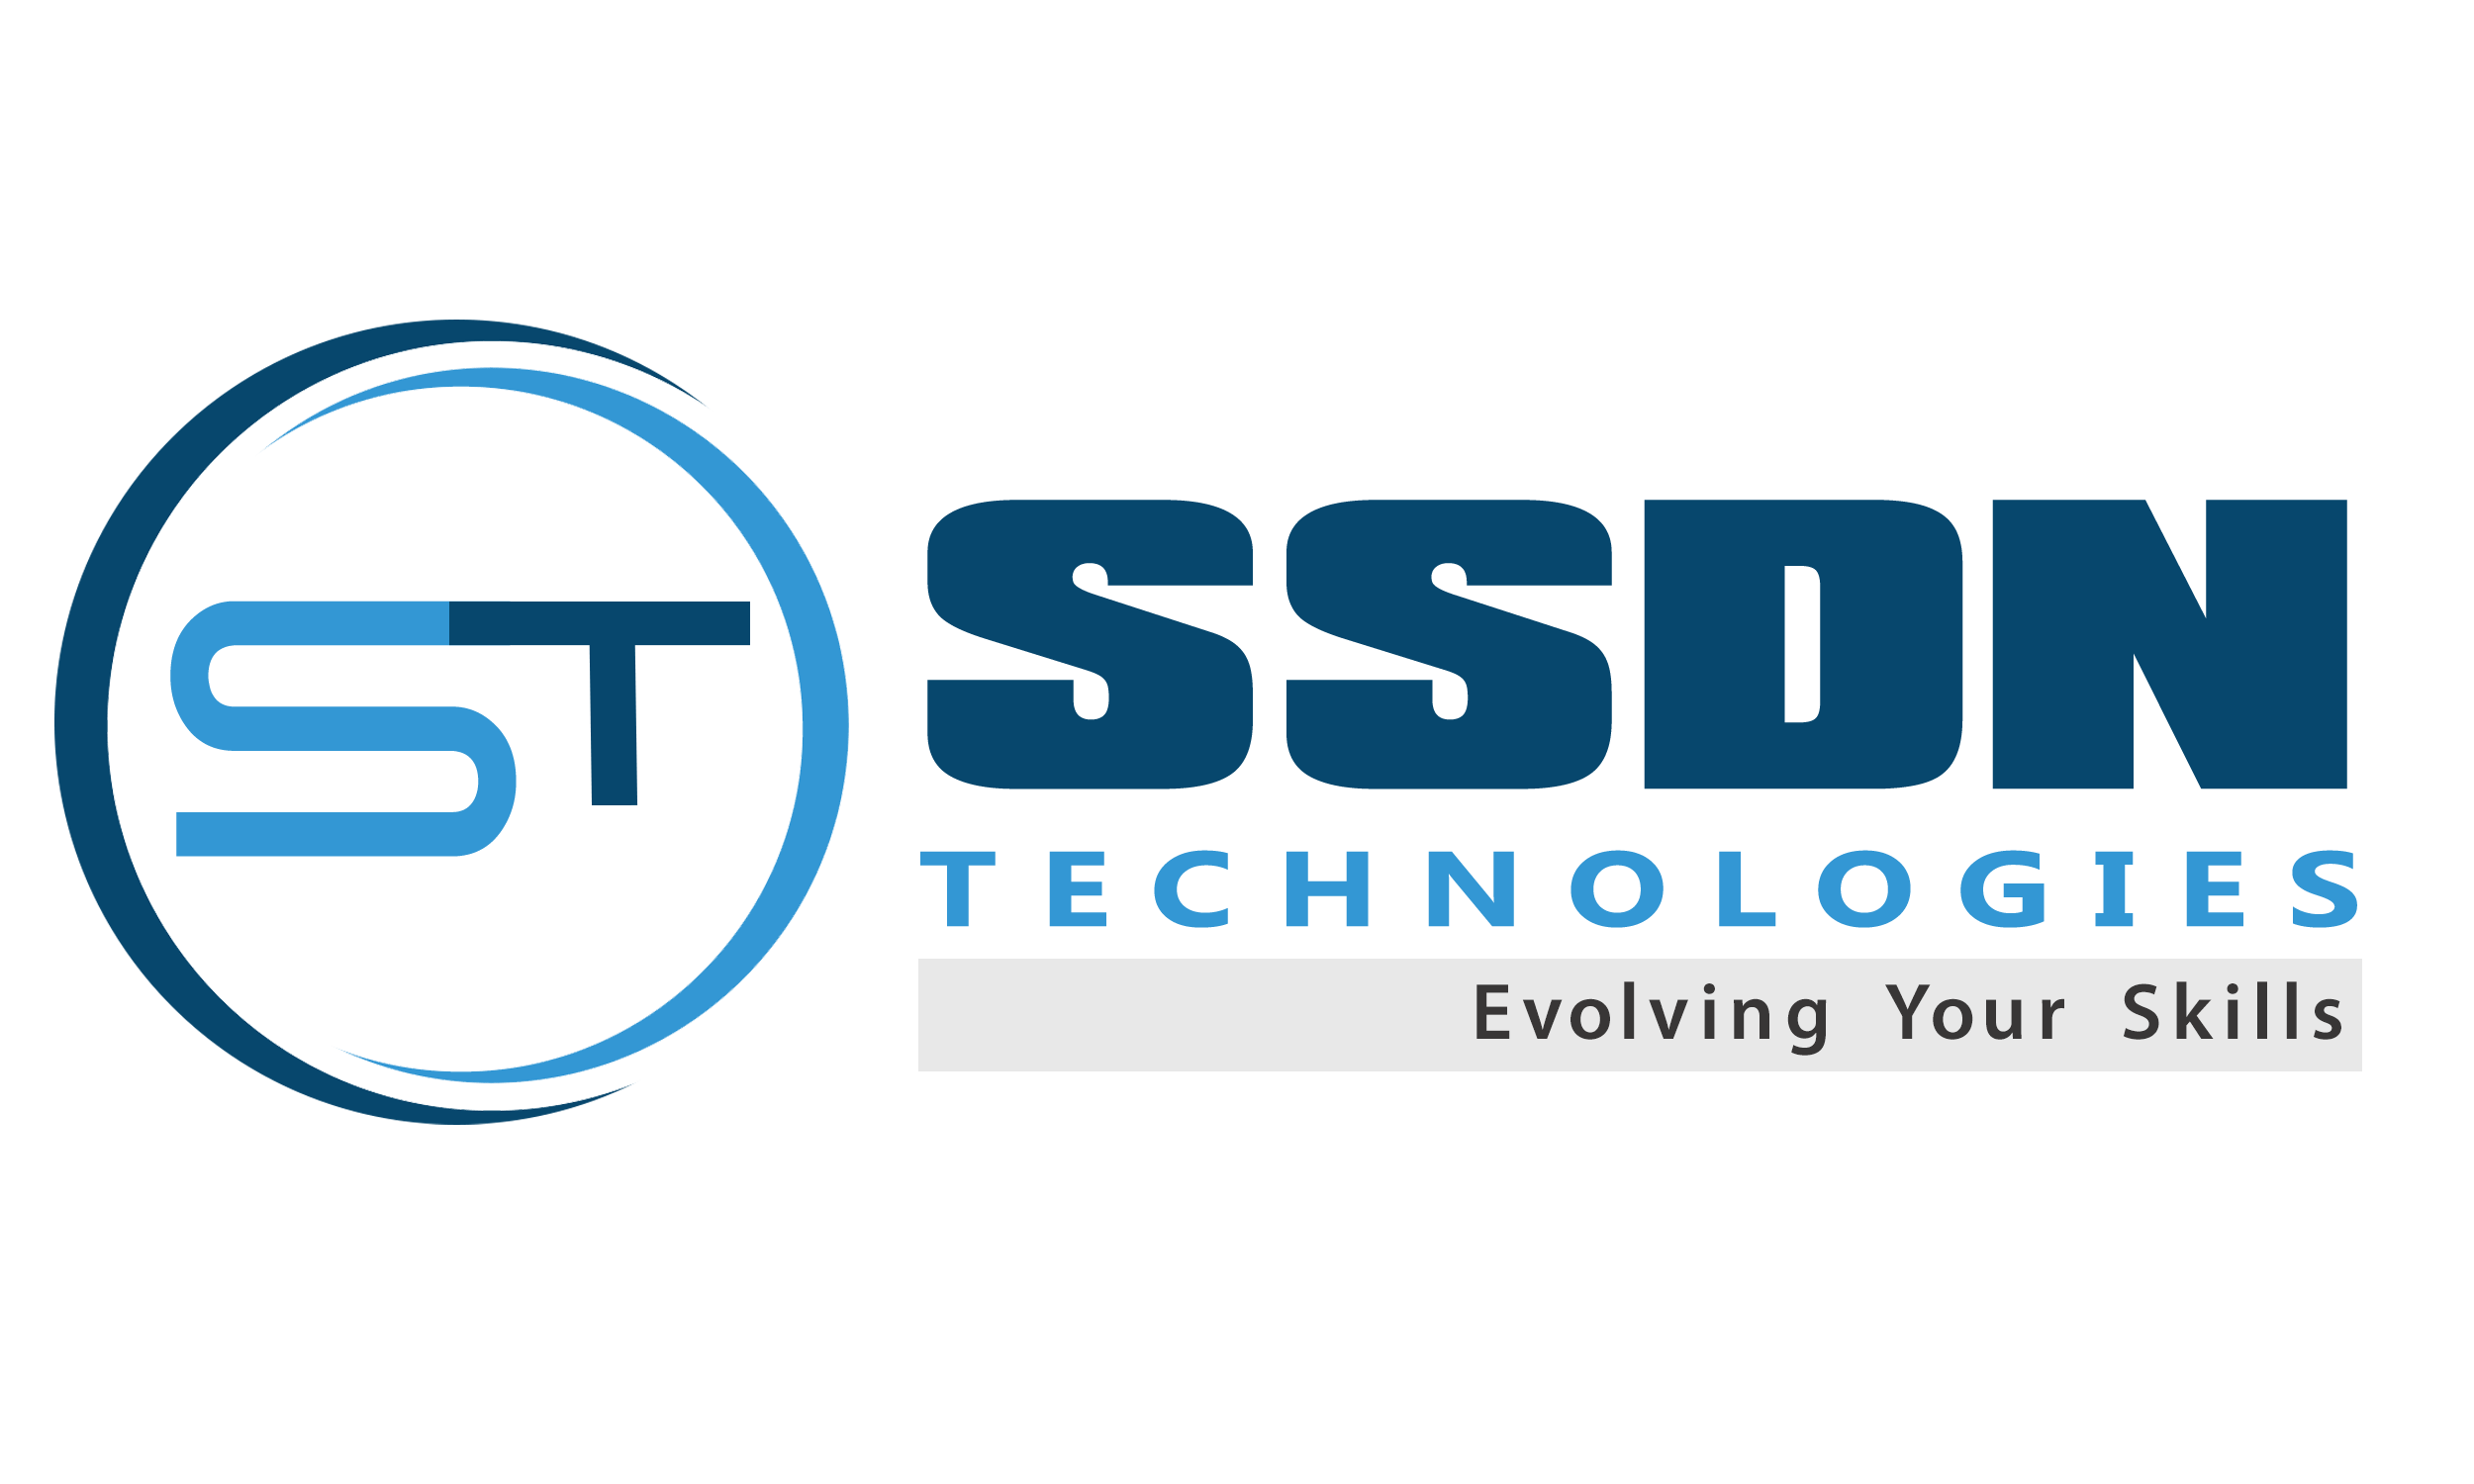 ssdn-technologie-logo